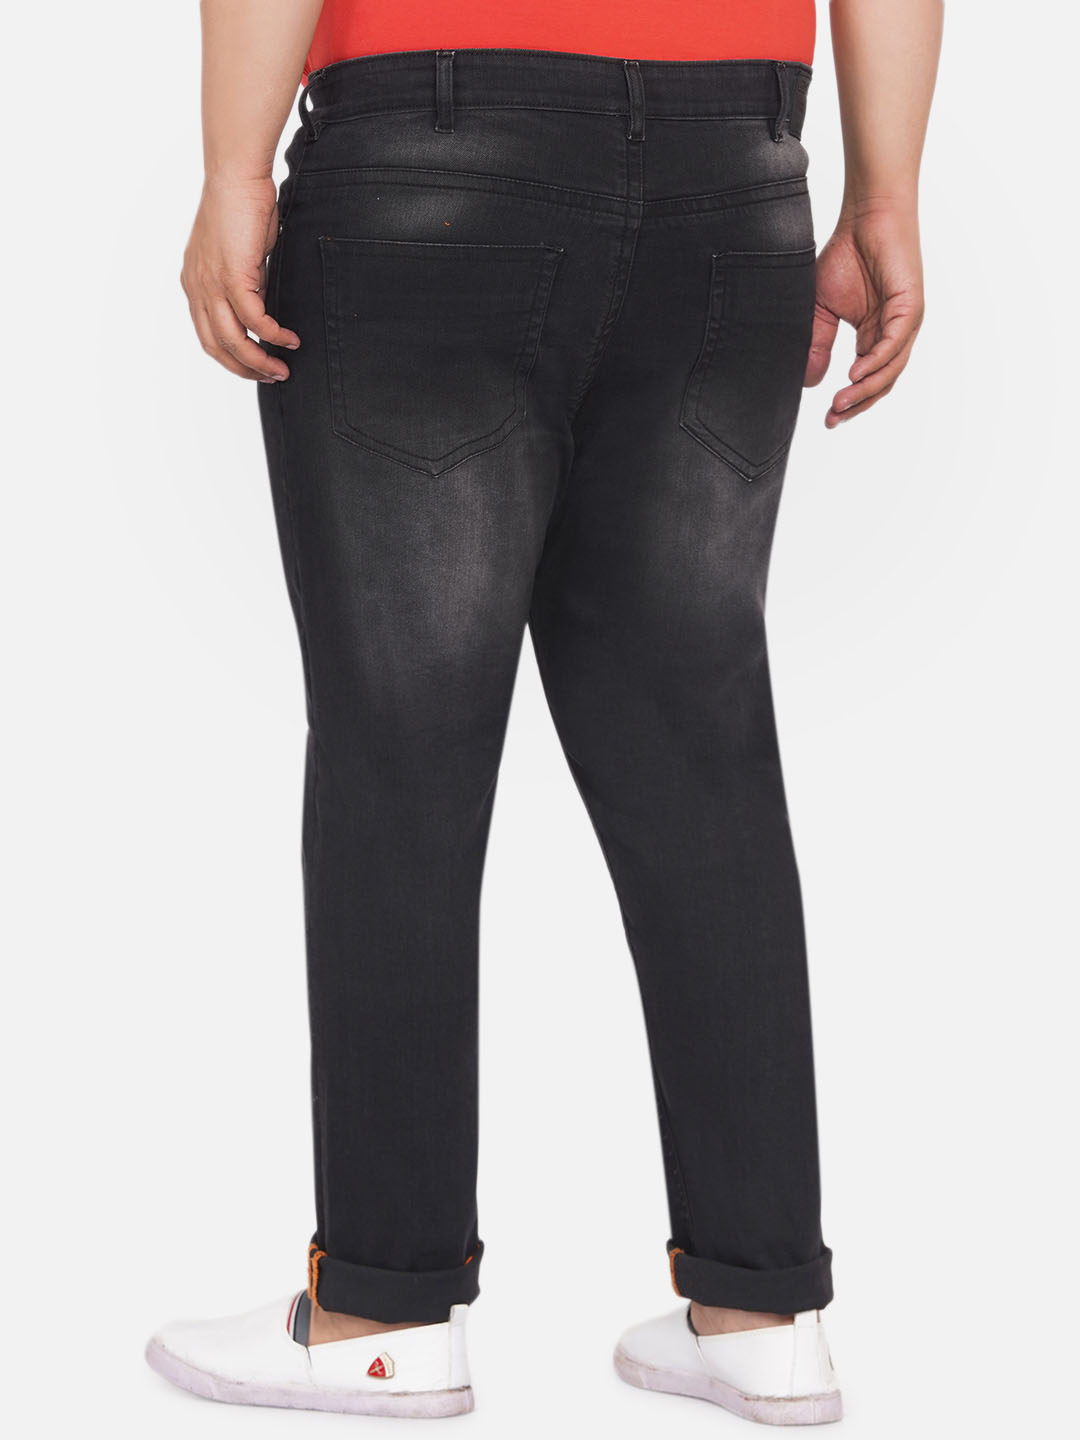 bottomwear/jeans/EJPJ25060/ejpj25060-5.jpg